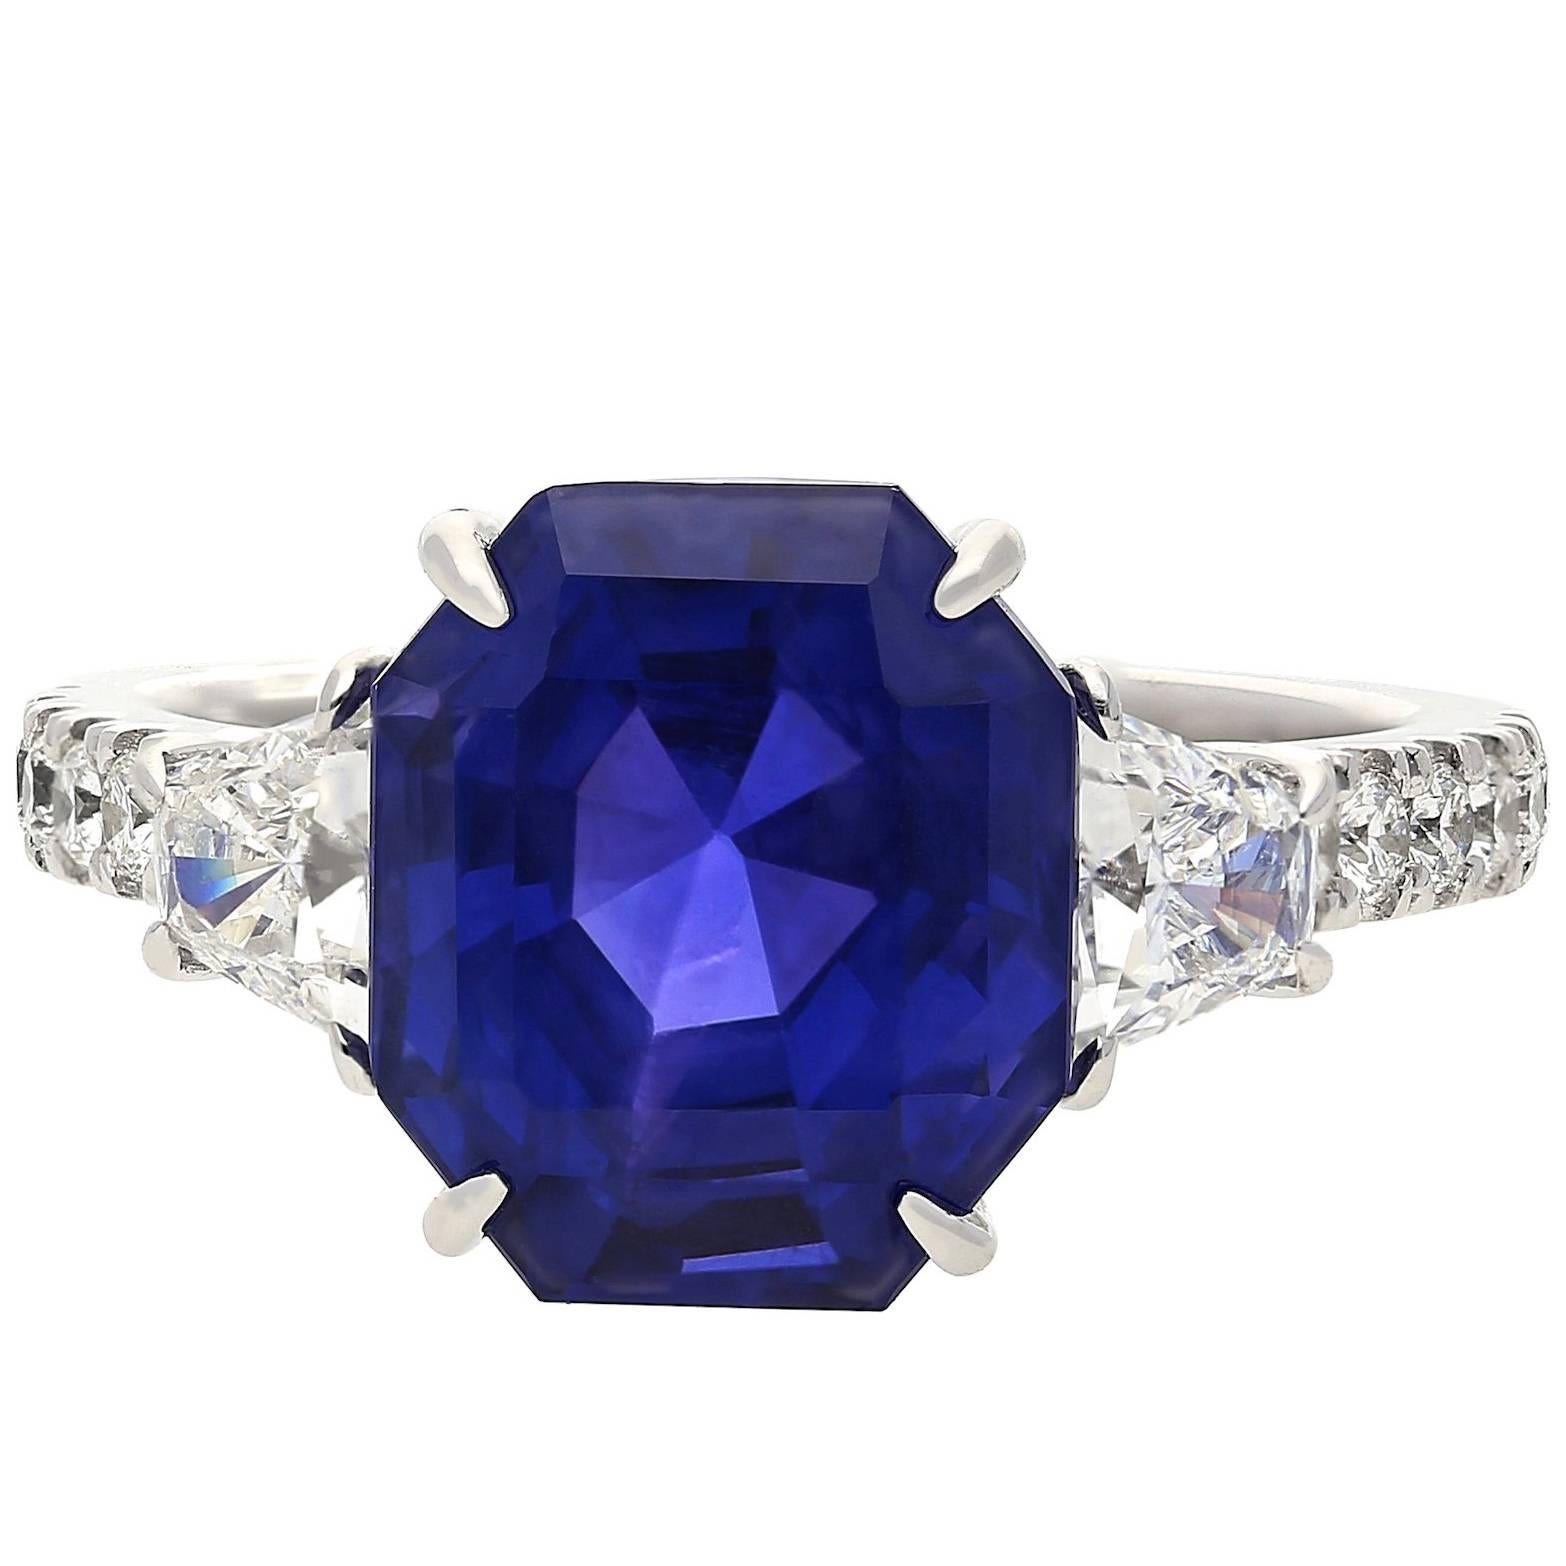 7.19 Carat Ceylon Emerald Cut Sapphire Diamond Gold Ring